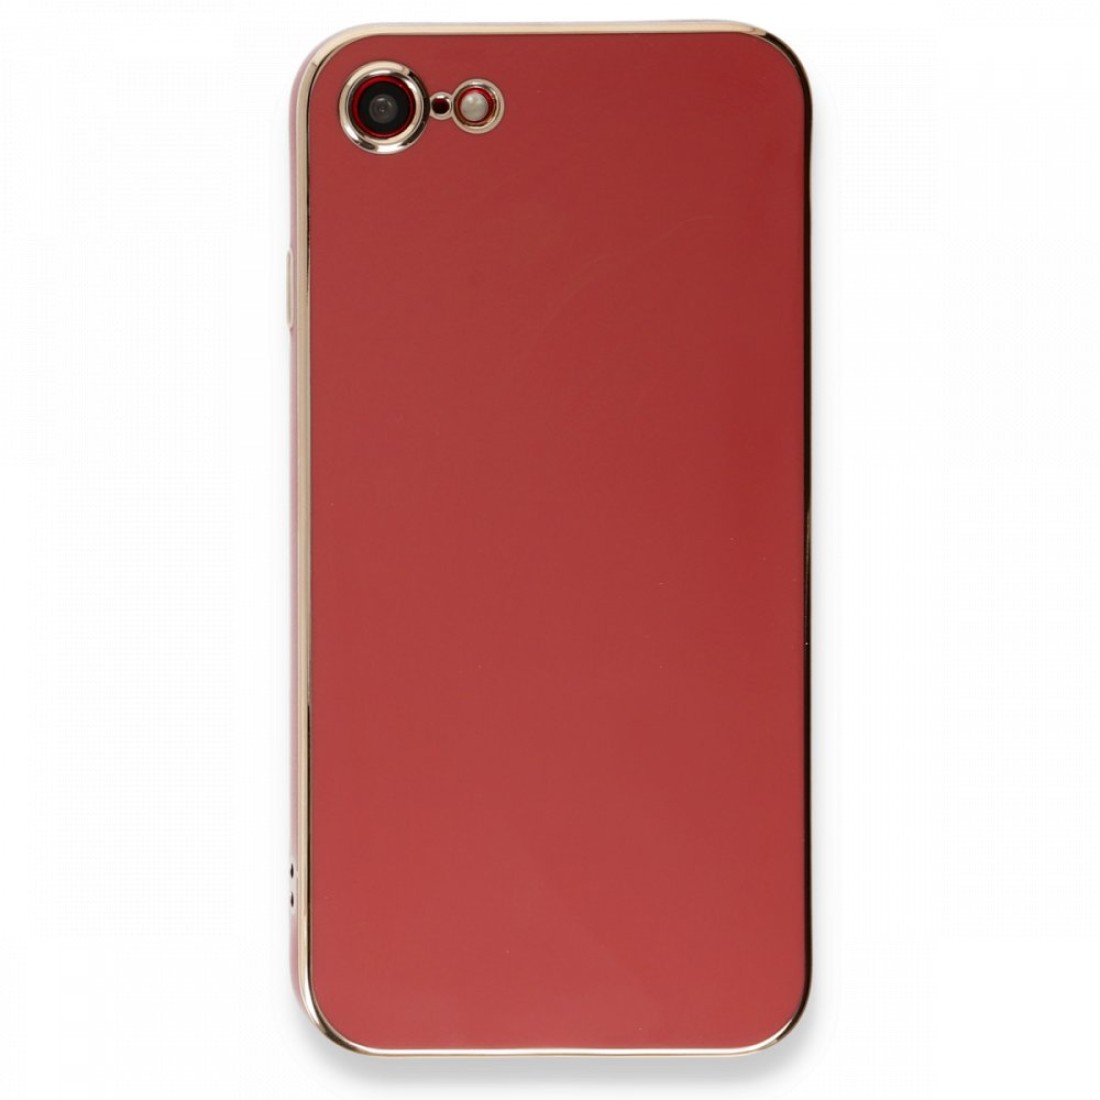 Apple iPhone 7 Kılıf Volet Silikon - Kırmızı